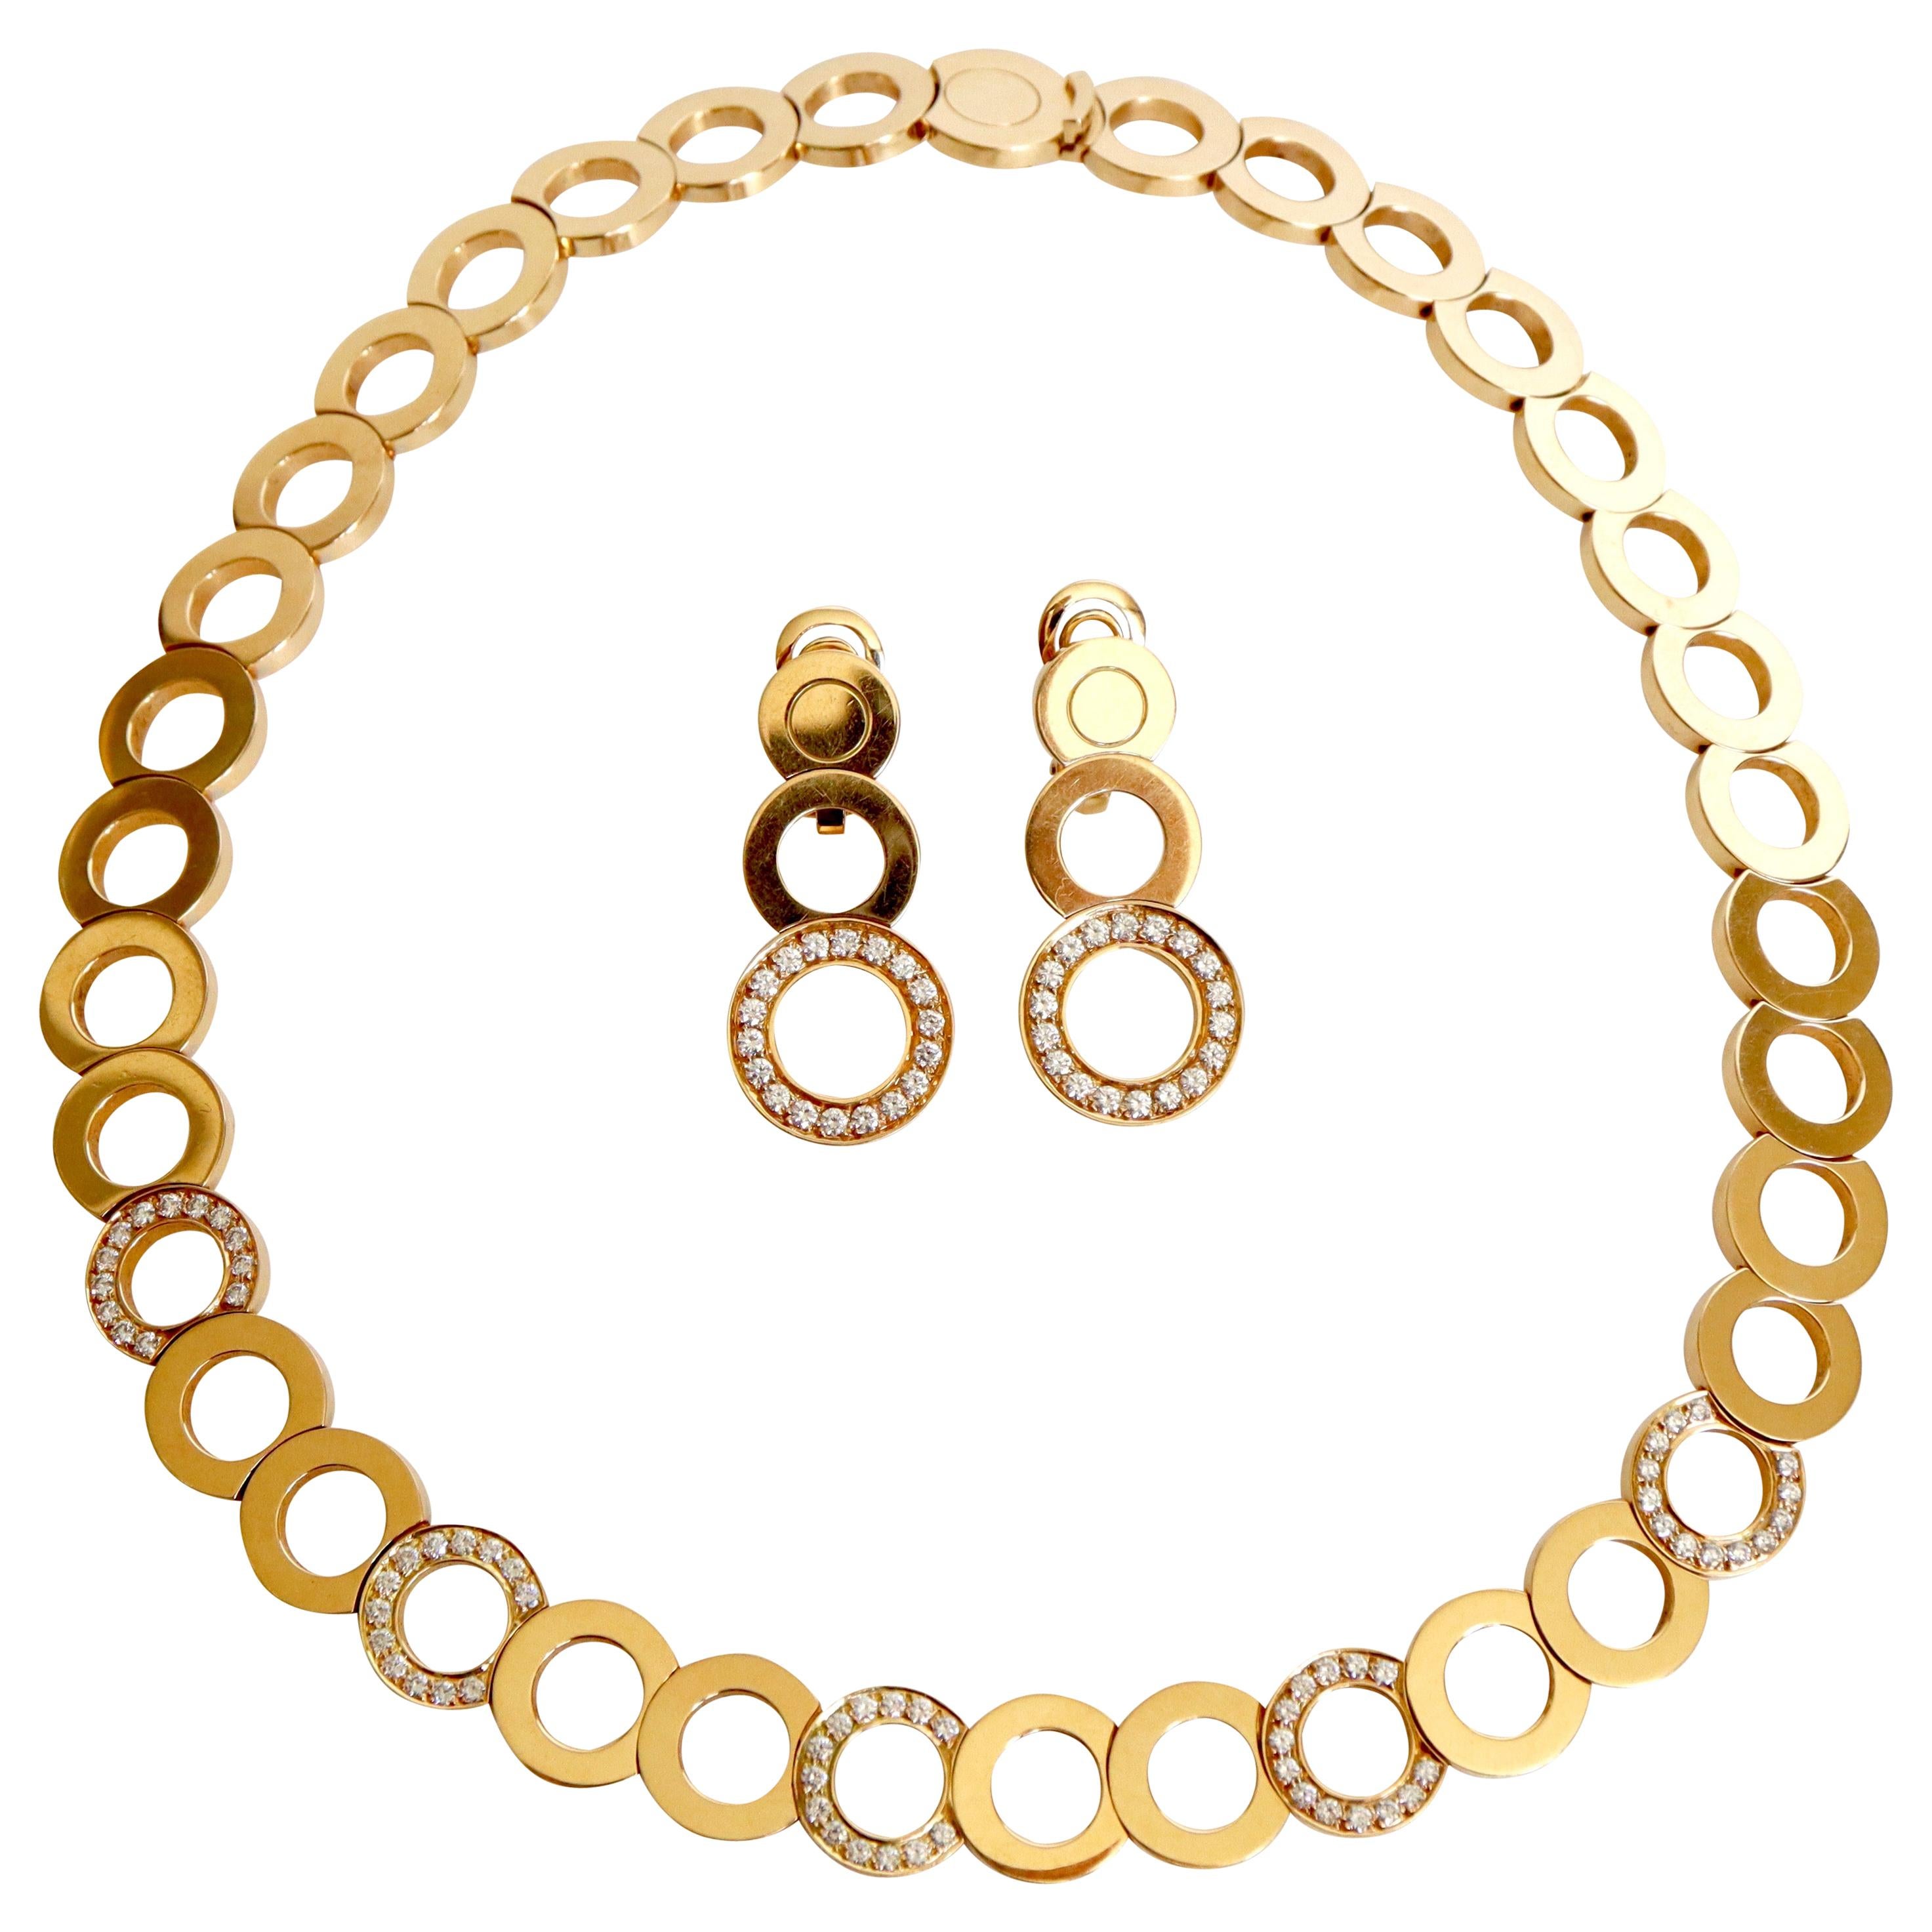 Das Werk von J.J. Set aus einer Halskette und Ohrringen aus 18 Karat Gold und Diamanten von Perrin